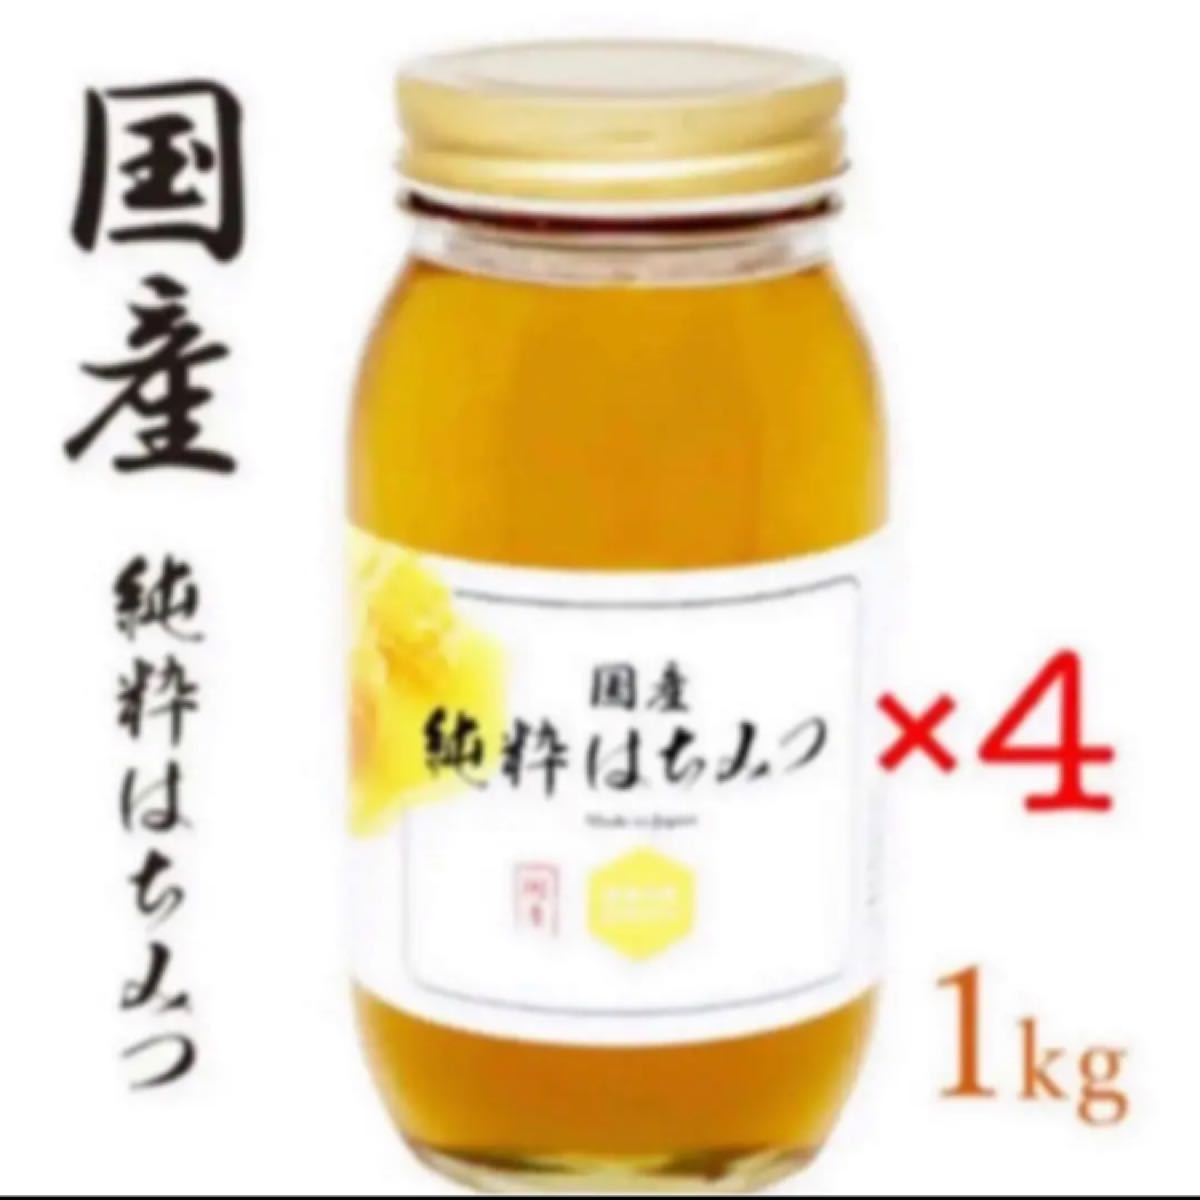 全品送料無料 国産純粋れんげ蜂蜜1キロ2本